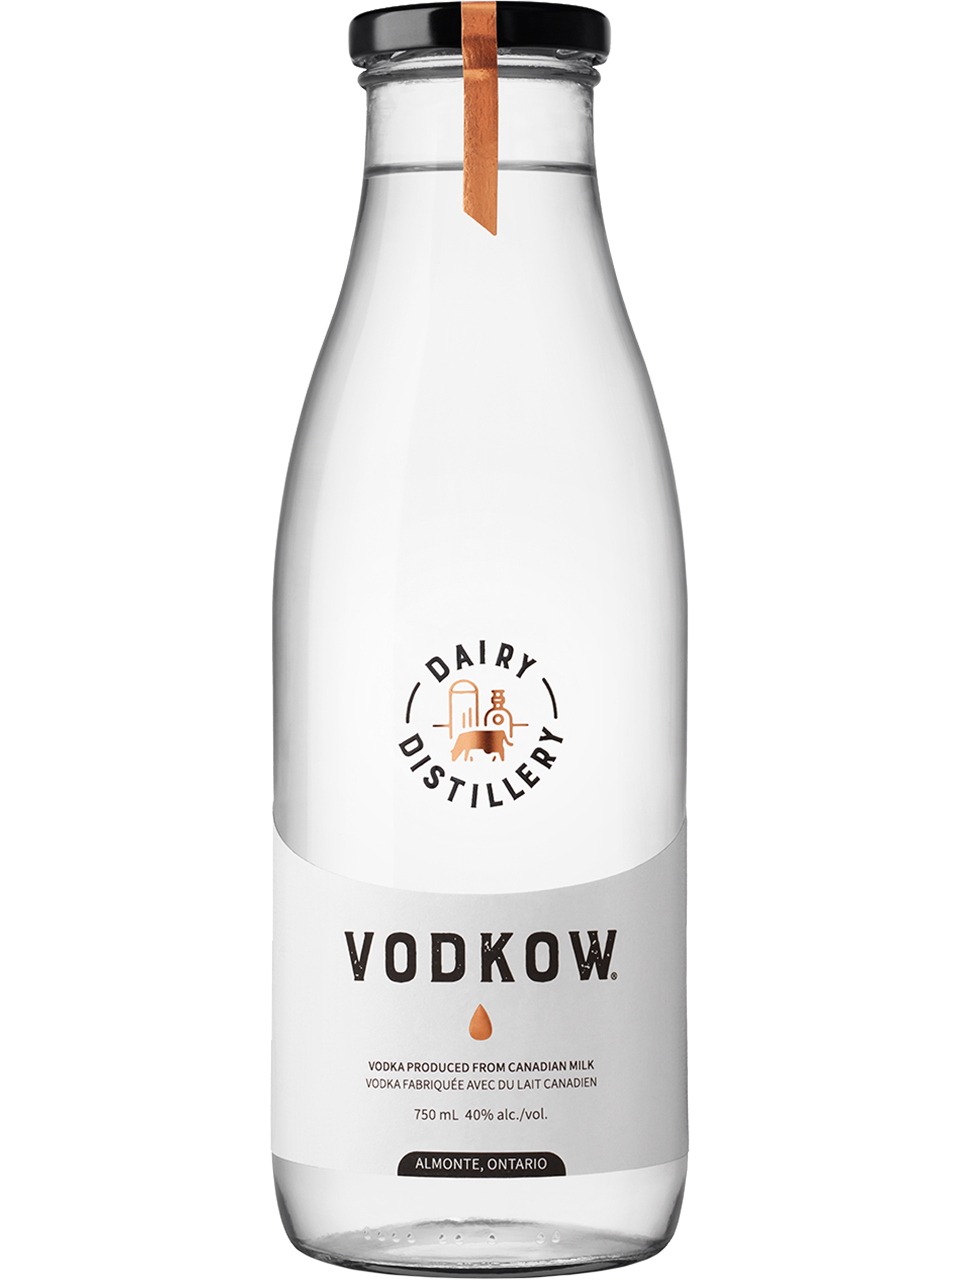 Vodkow Vodka